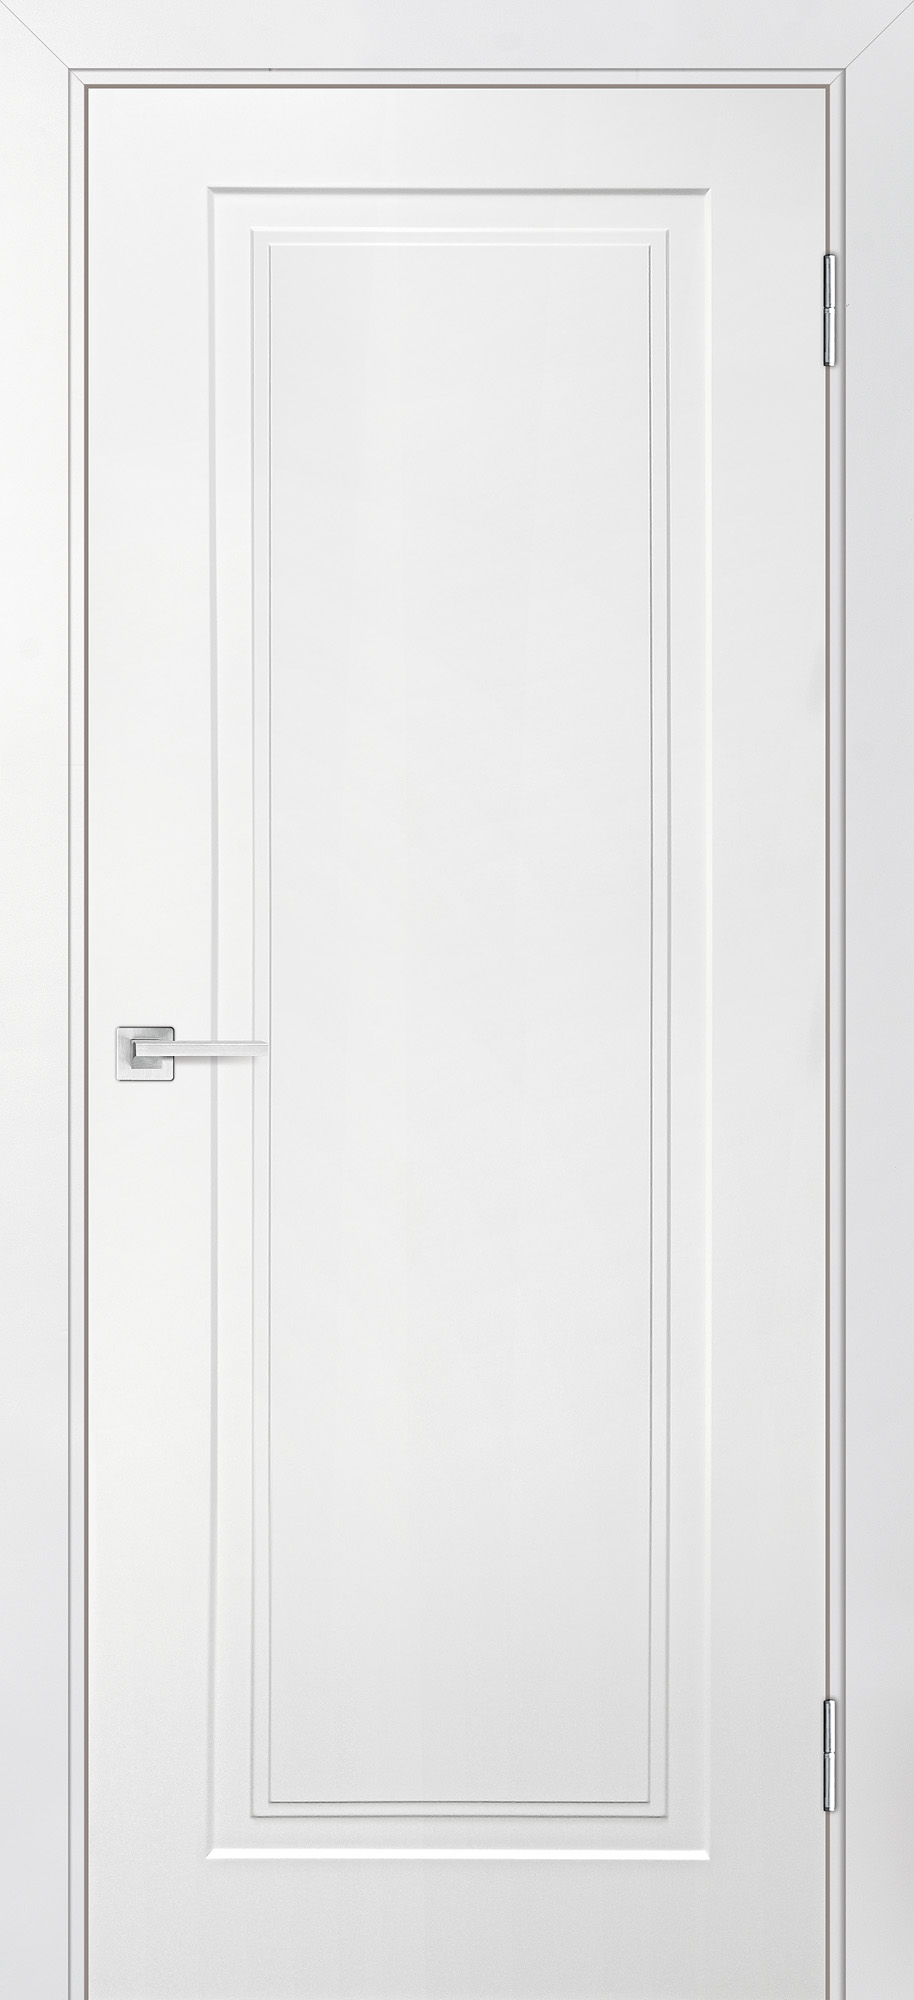 Двери крашеные (Эмаль) ТЕКОНА Смальта-Лайн 06 глухое Белый ral 9003 размер 200 х 80 см. артикул F0000093280